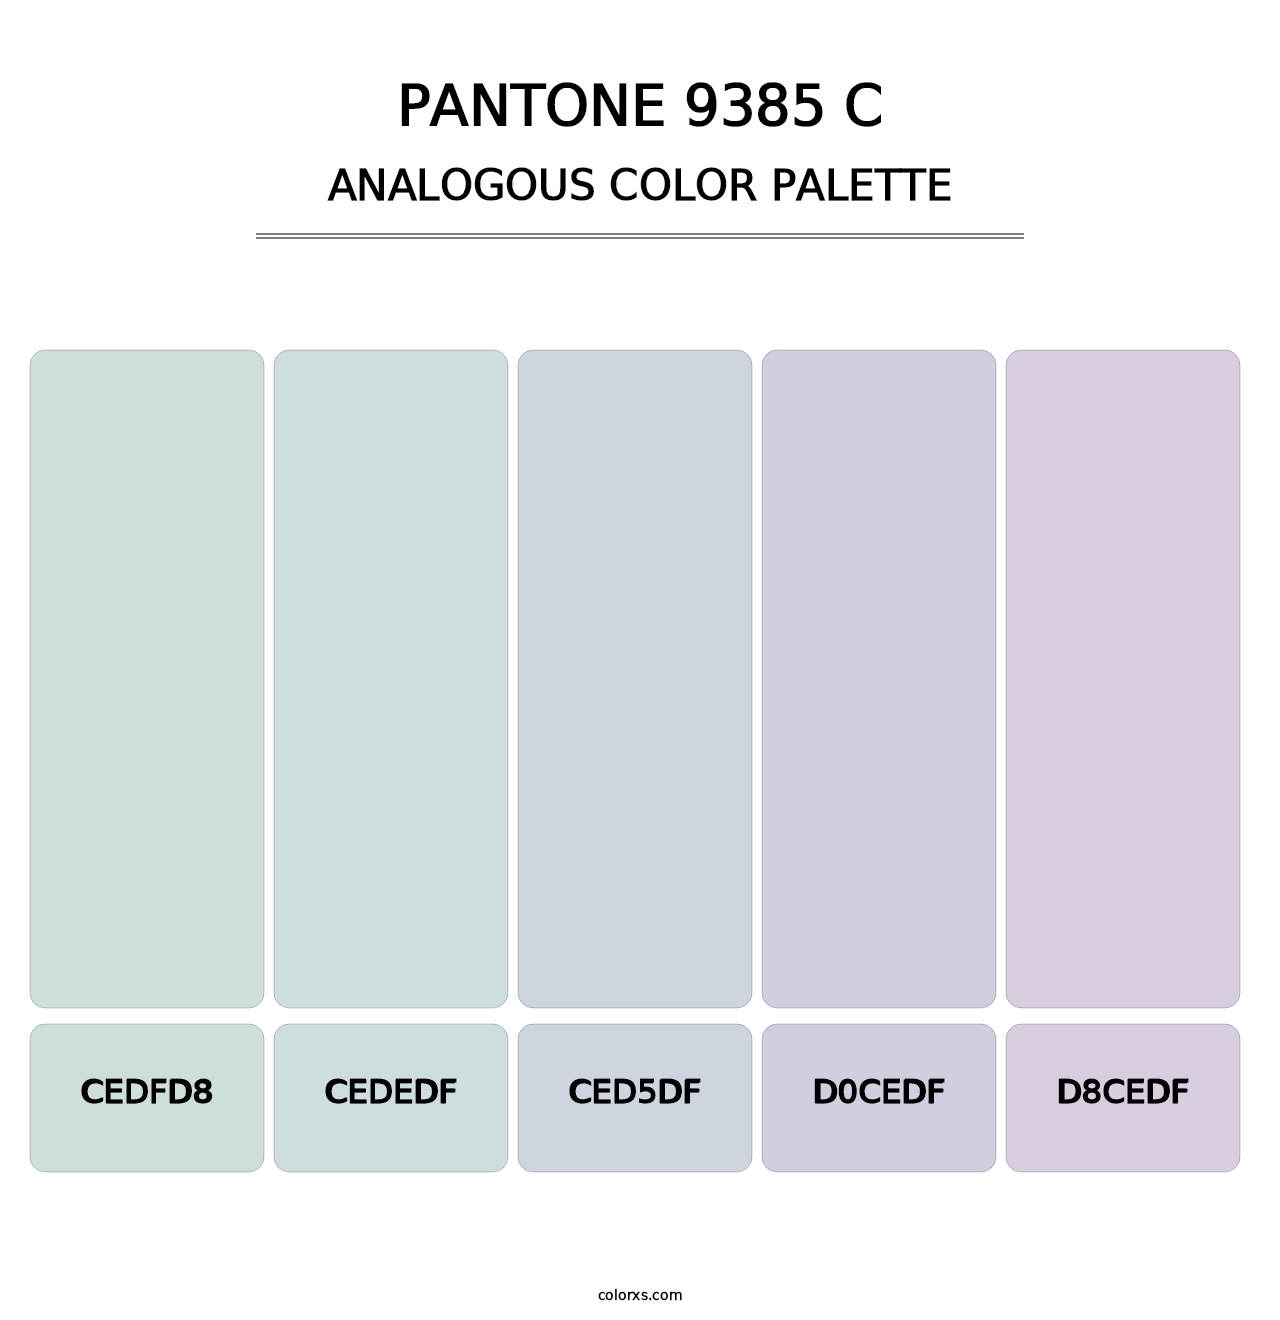 PANTONE 9385 C - Analogous Color Palette